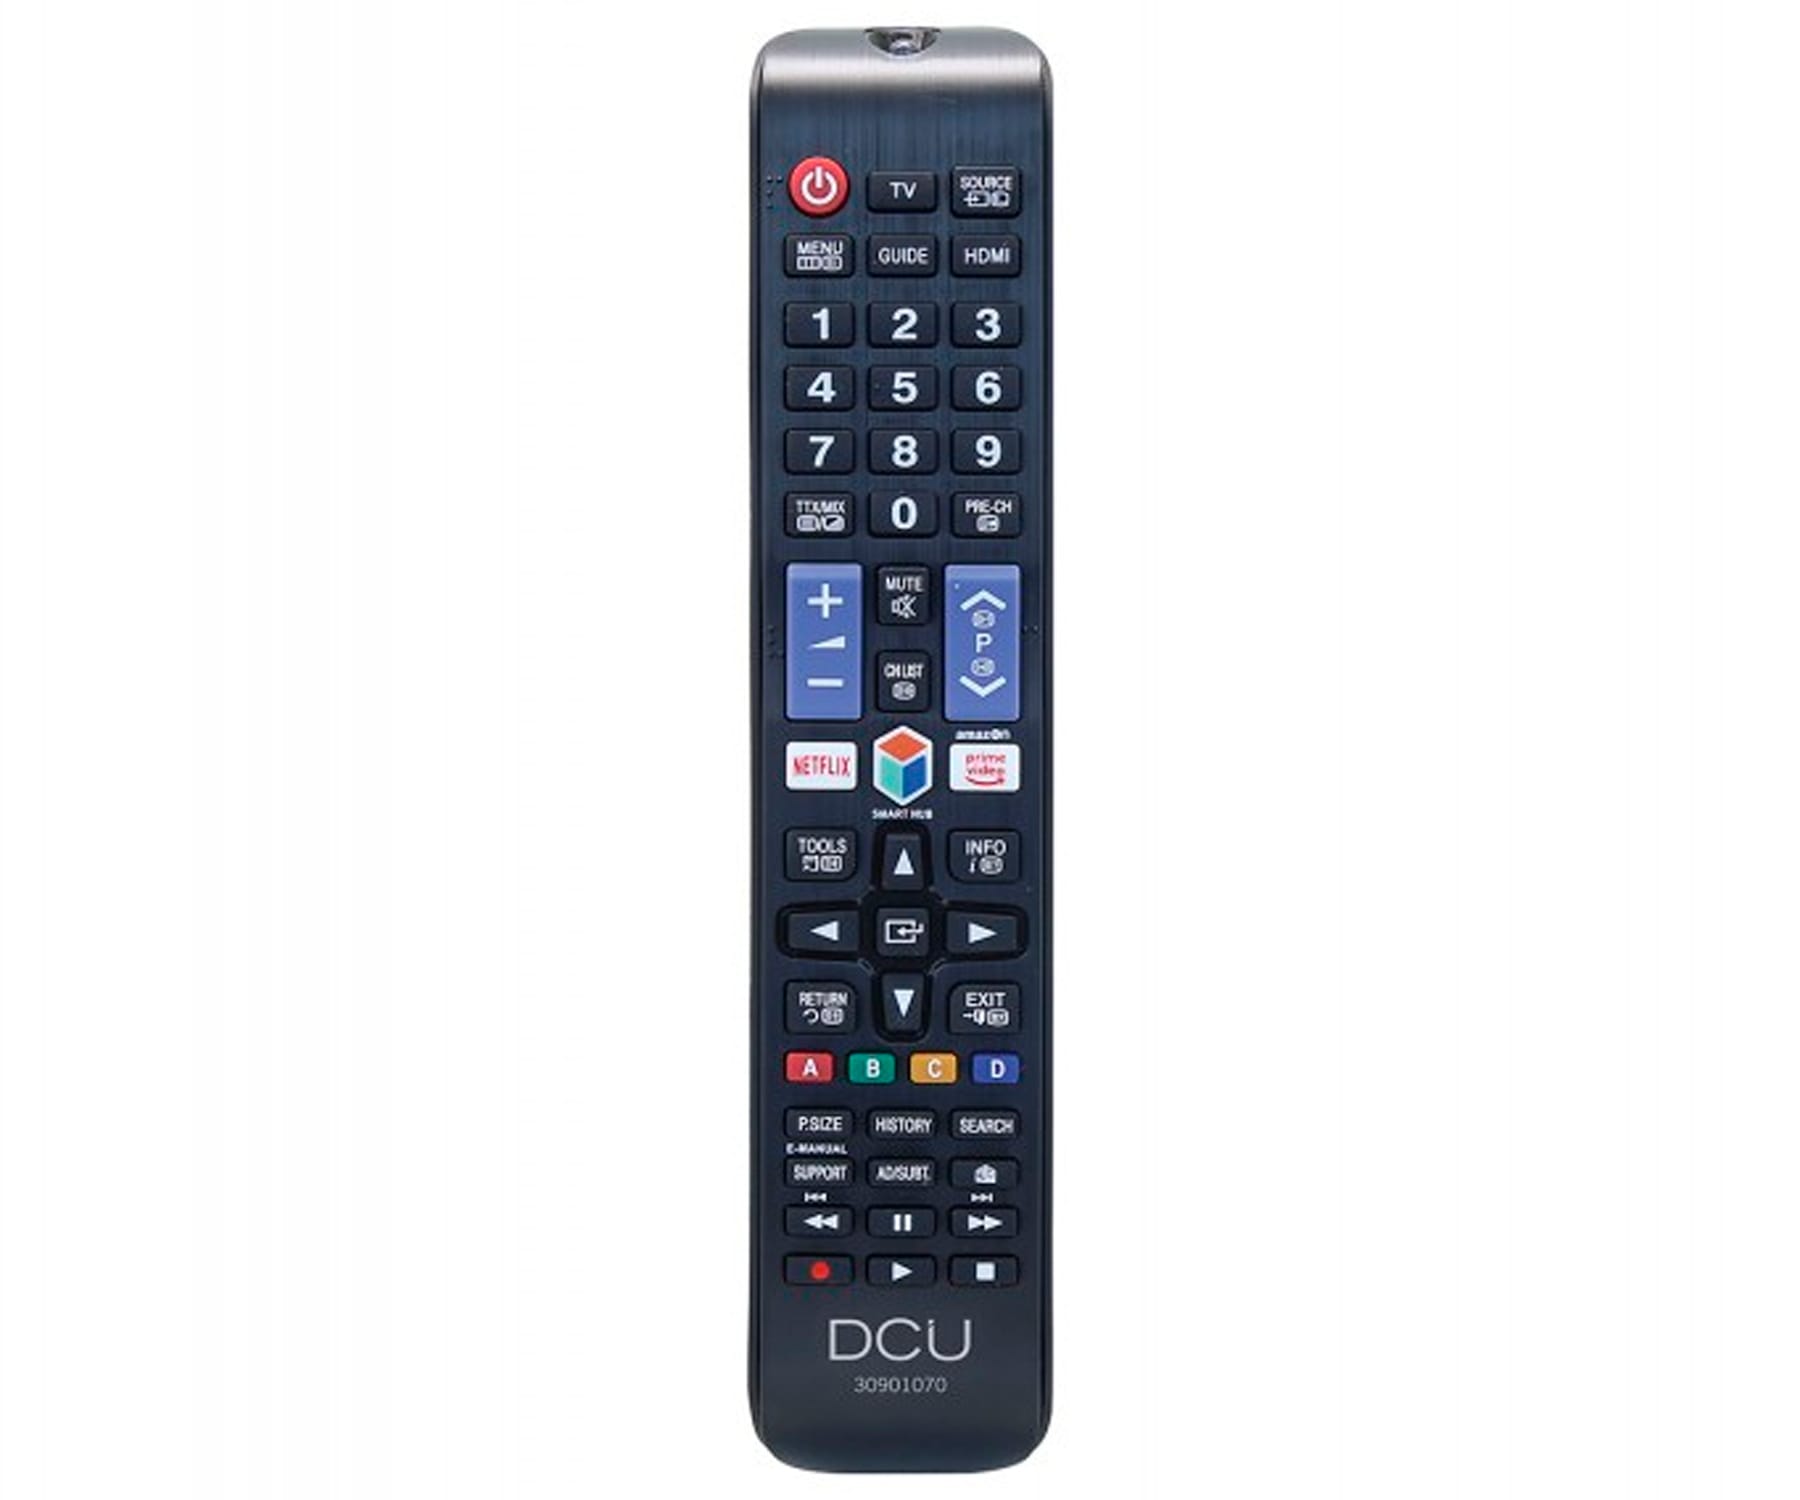 Dcu - DCU Mando a distancia universal para Samsung